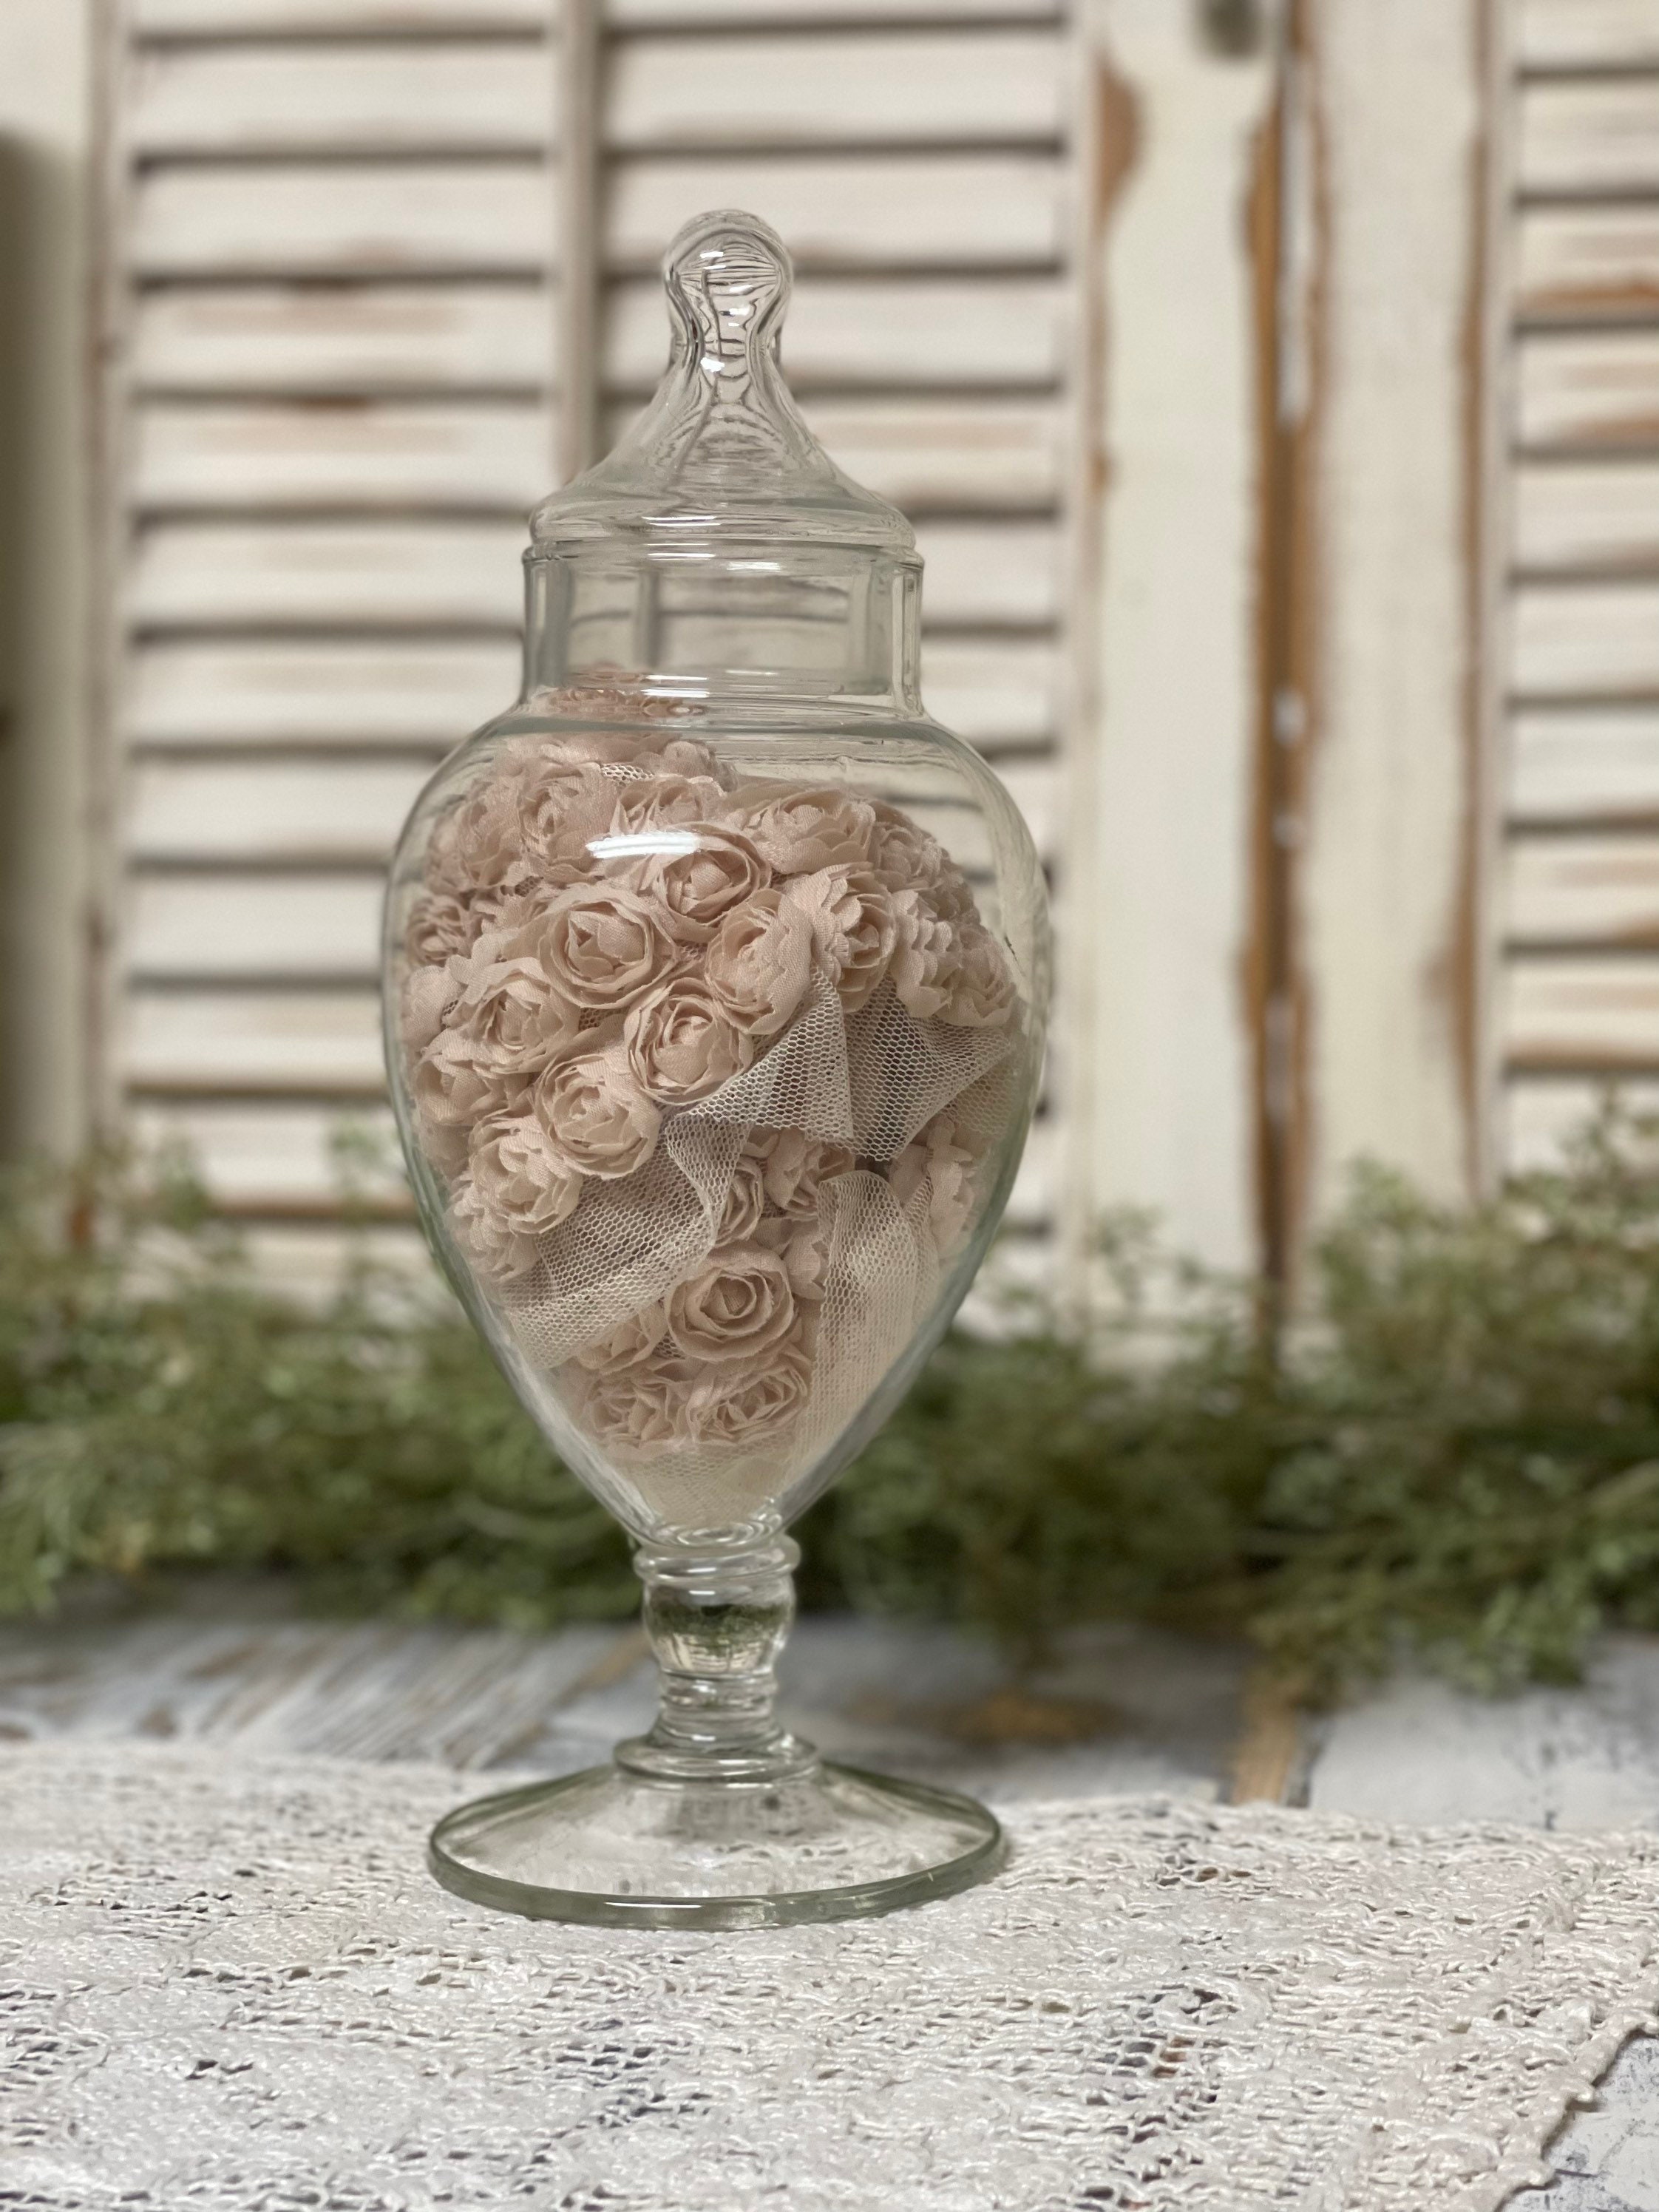 Large glass apothecary jar